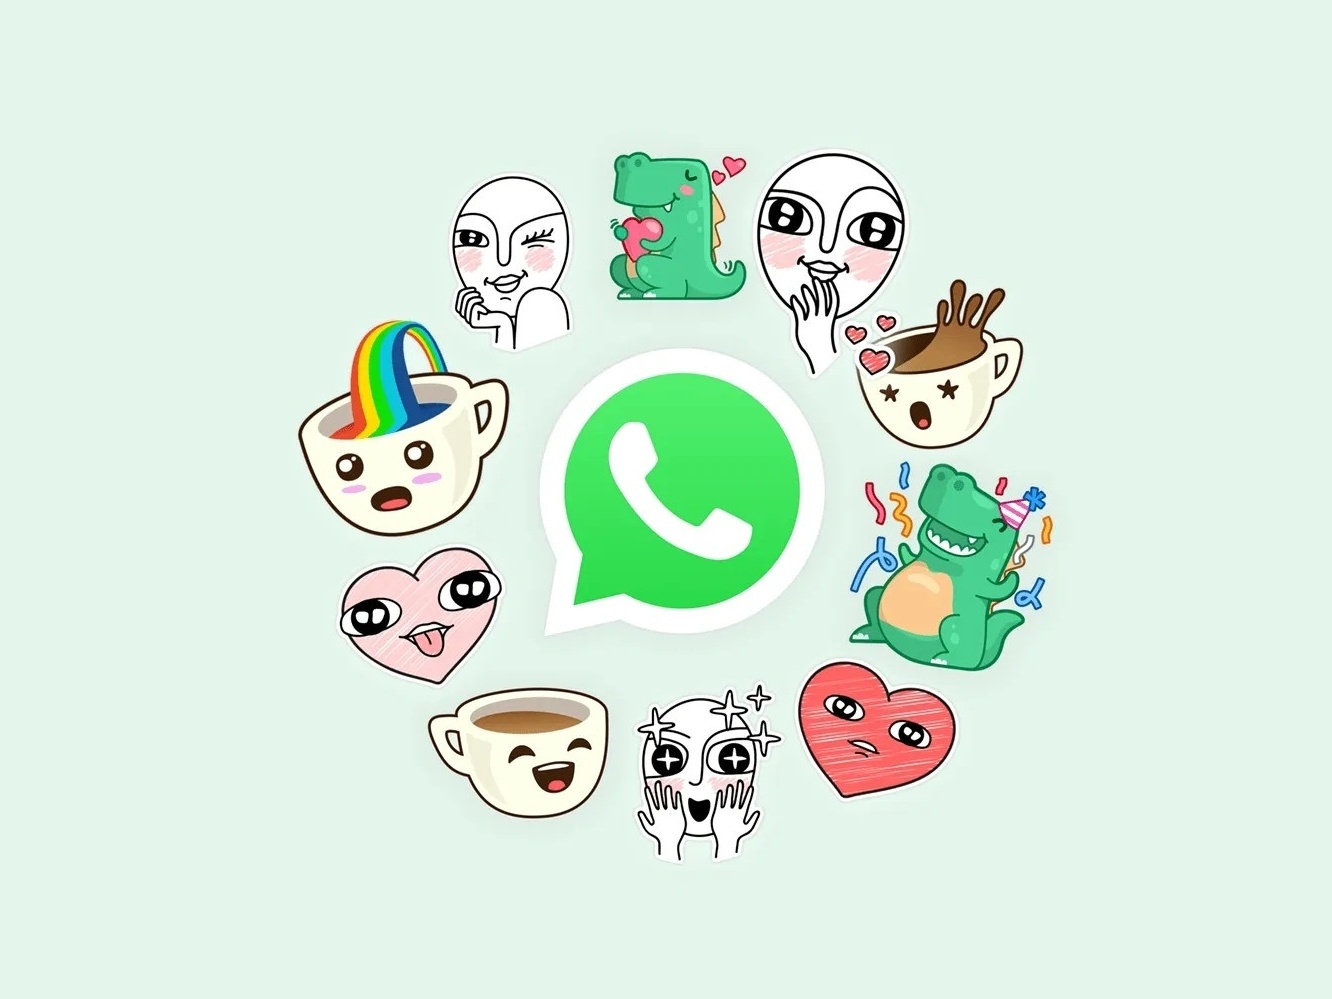 Como criar figurinhas animadas para WhatsApp